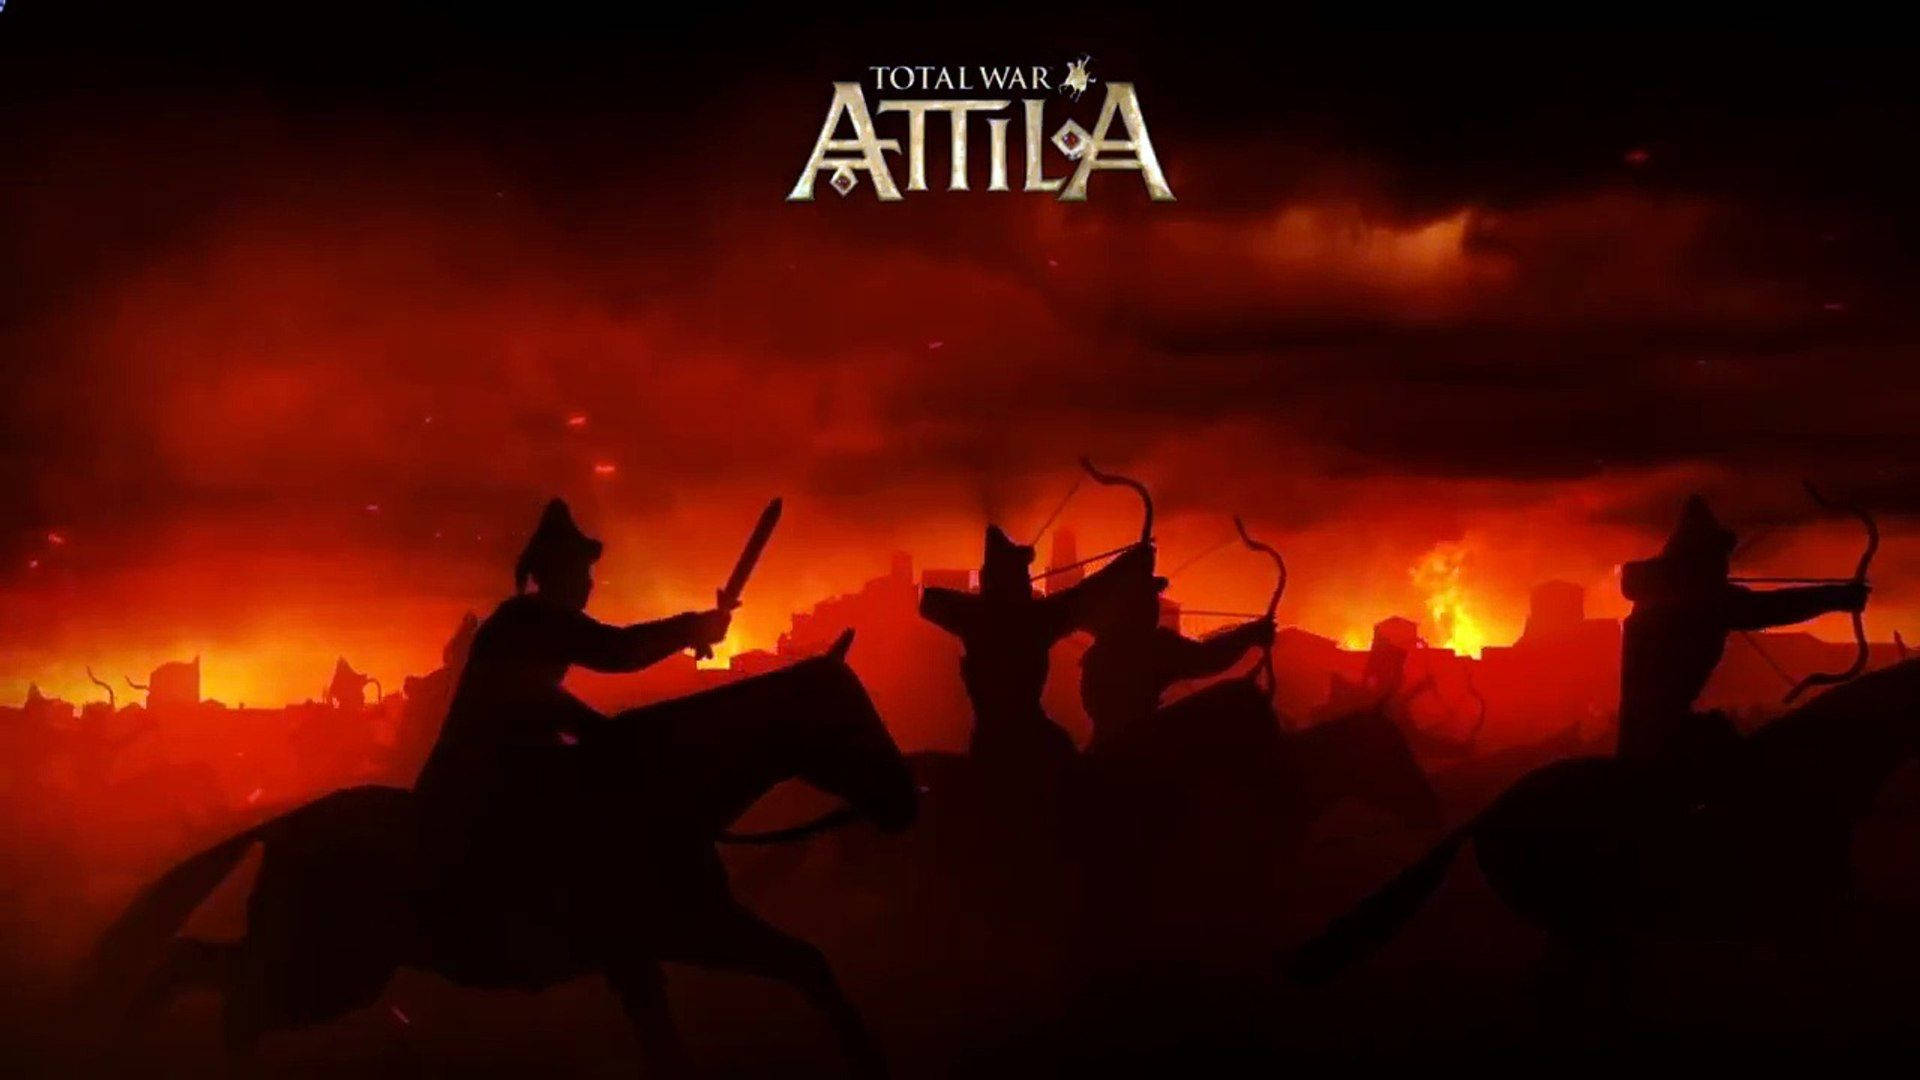 Epic Battlefield Scene from Total War Attila Wallpaper